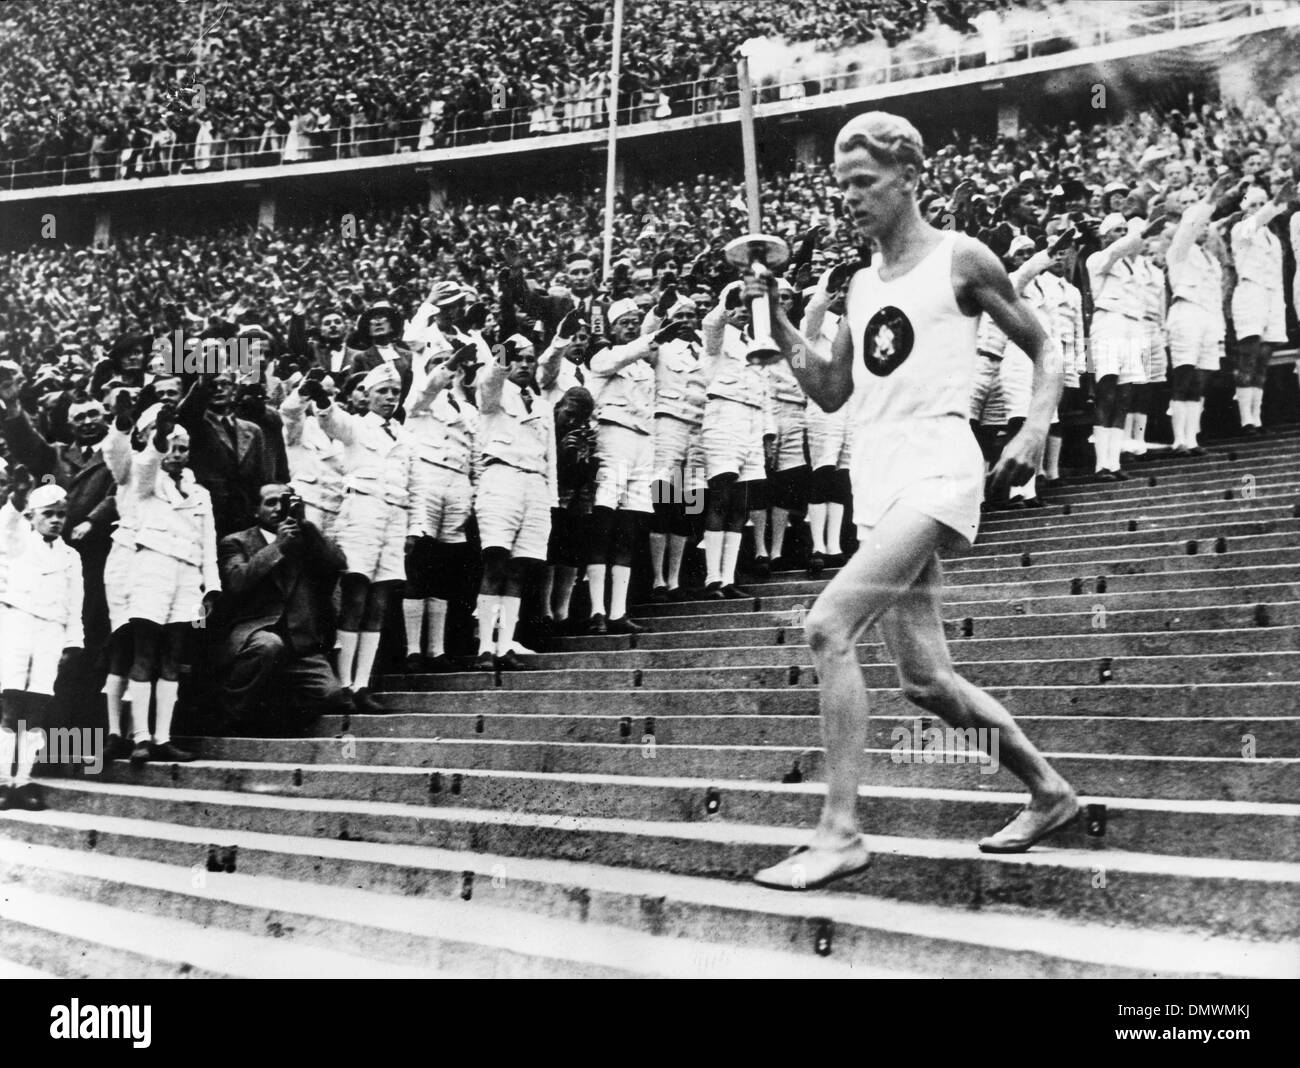 2 août 1936 - Berlin, Allemagne - La flamme olympique portée par un athlète allemand au cours de la cérémonie d'ouverture des Jeux olympiques à Berlin en Allemagne. (Crédit Image : © Keystone Photos USA/ZUMAPRESS.com) Banque D'Images